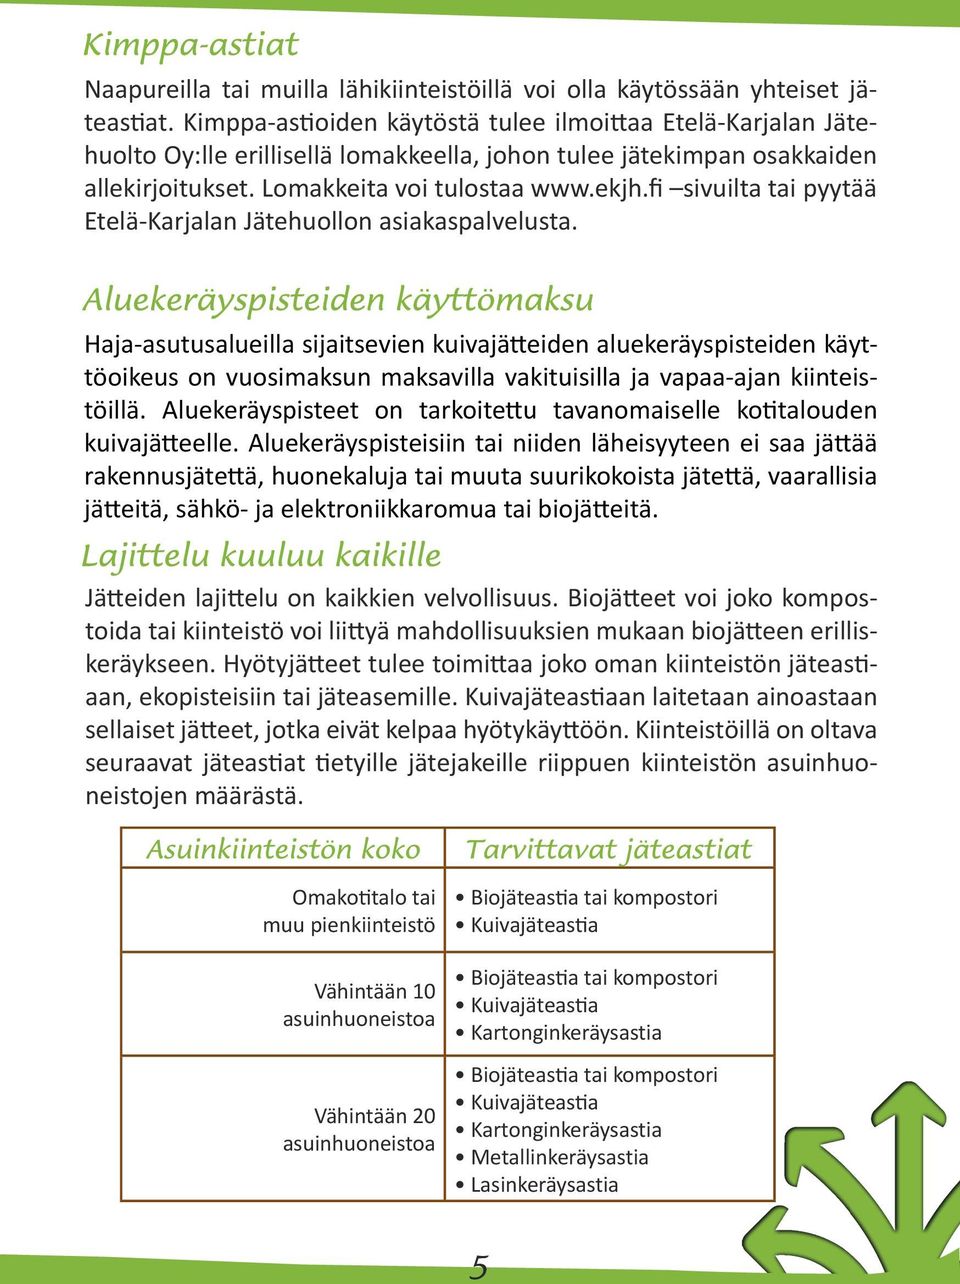 fi sivuilta tai pyytää Etelä-Karjalan Jätehuollon asiakaspalvelusta.